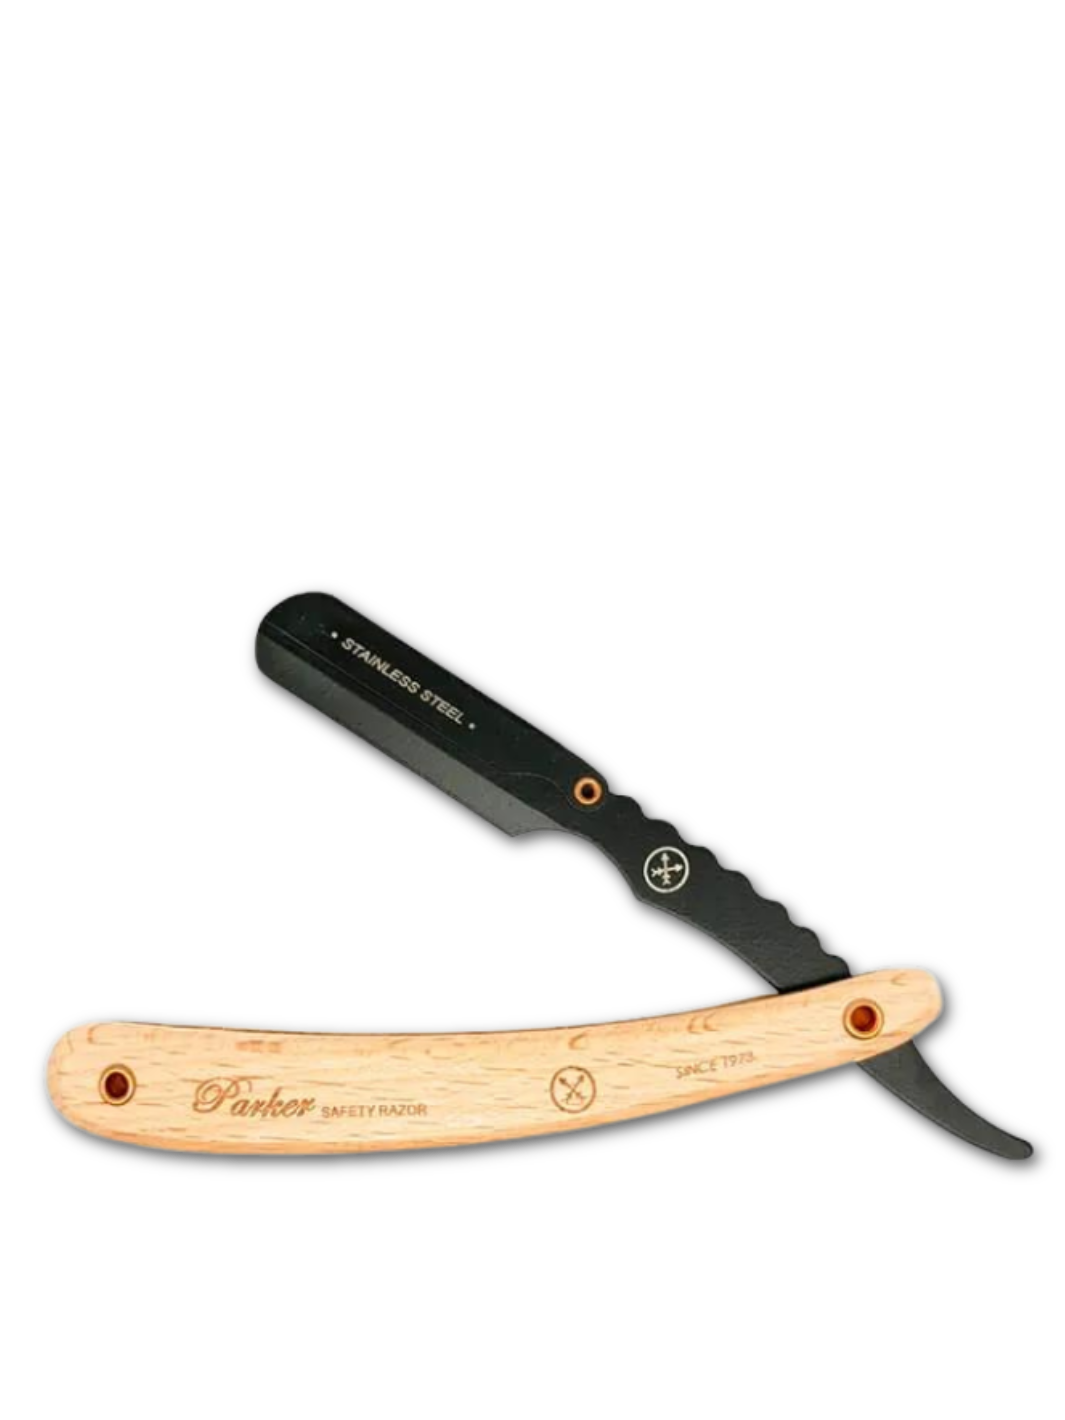 Das Parker SRPBA Rasiermesser mit natürlichem Holzgriff und schwarzer Edelstahlklinge, verfügbar bei Phullcutz für eine präzise, traditionelle Rasur.